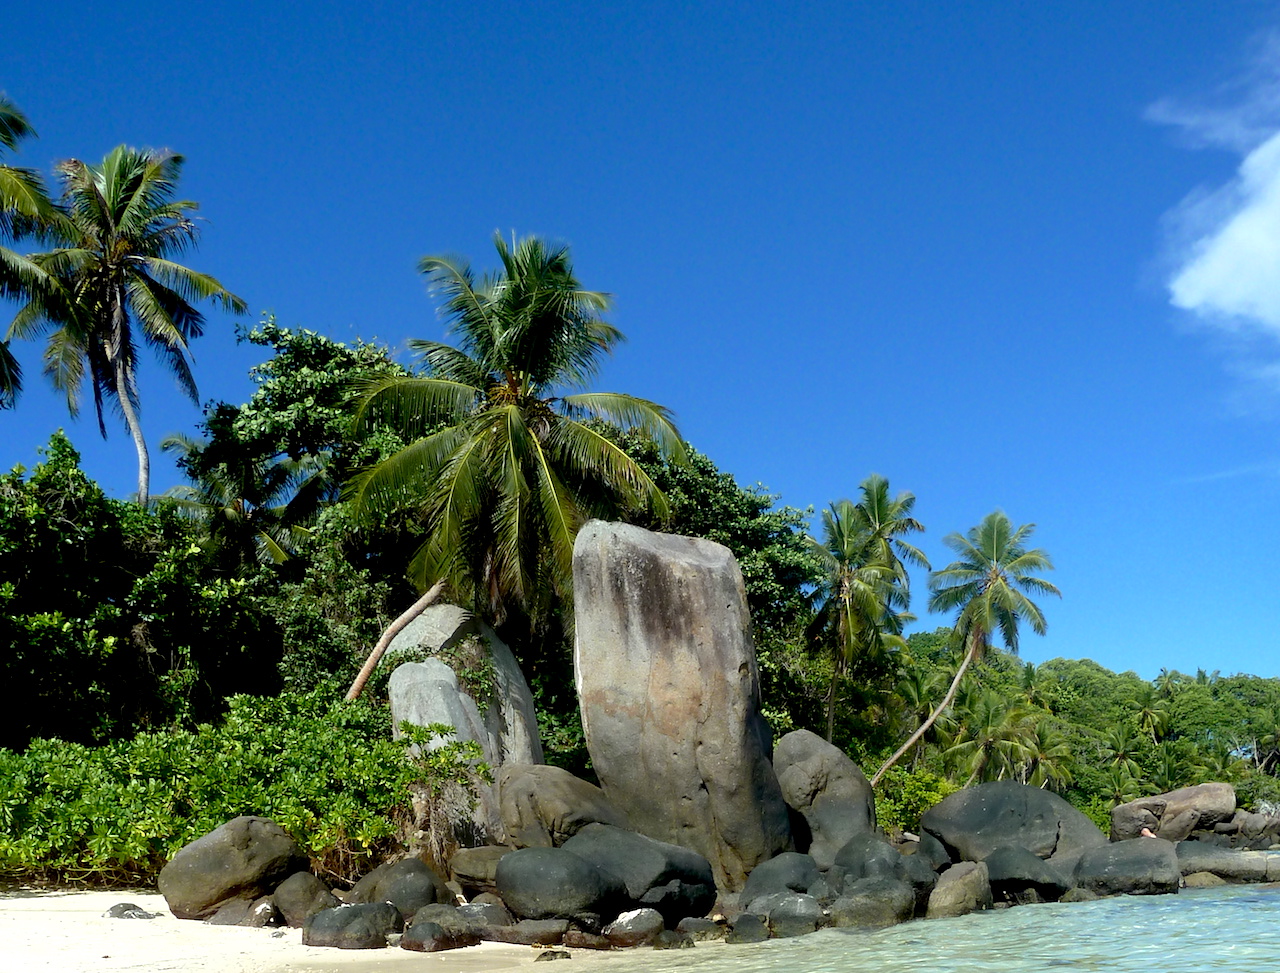 Anse Royale Beach on Mahe, Seychelles #Mahe #Seychelles #AnseRoyaleBeach #MaheBeach #SeychellesBeach